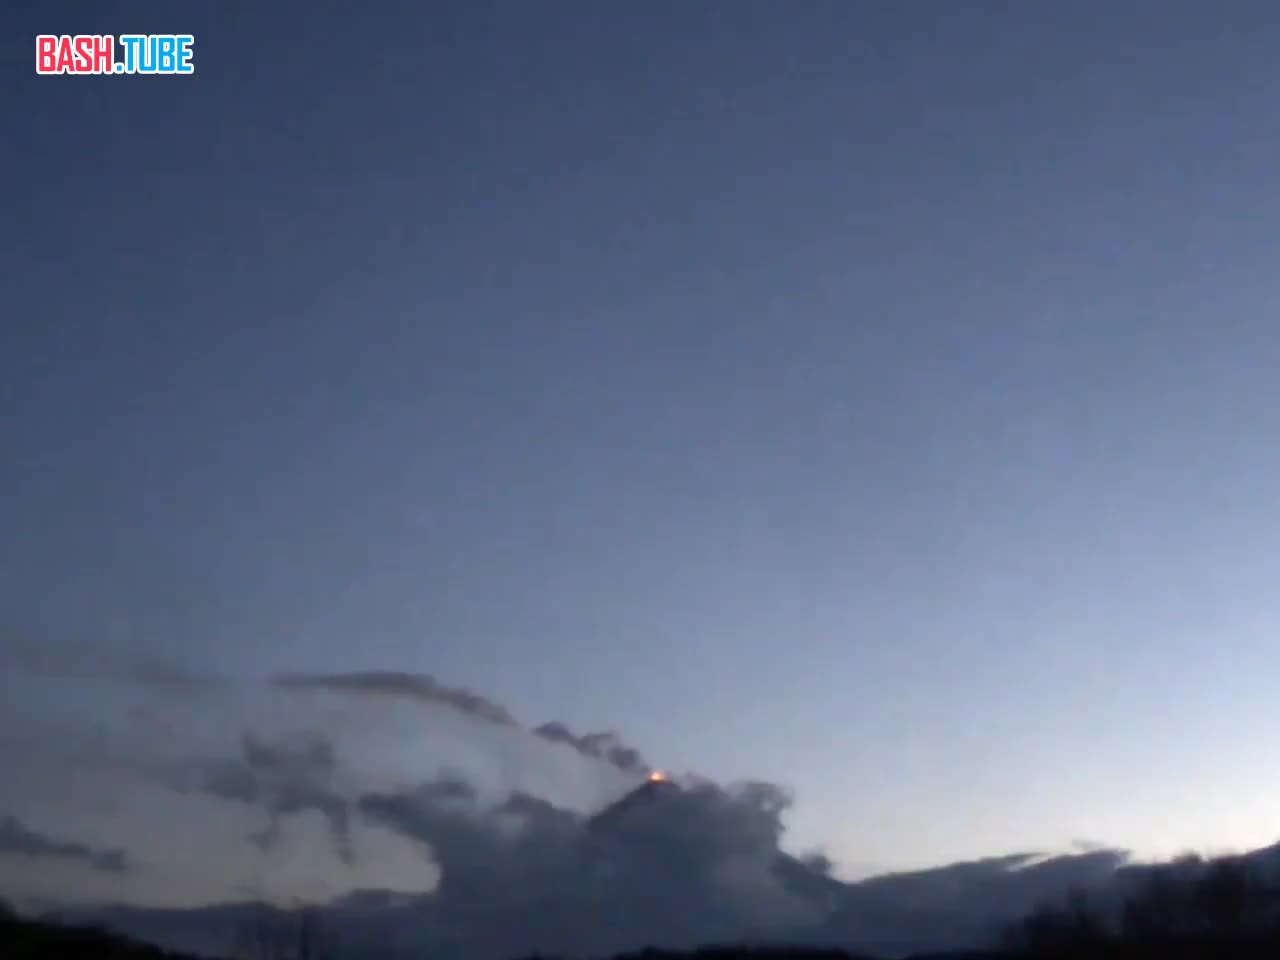  Вулкан Ключевской на Камчатке выбросил столб пепла на высоту до 5 тыс метров